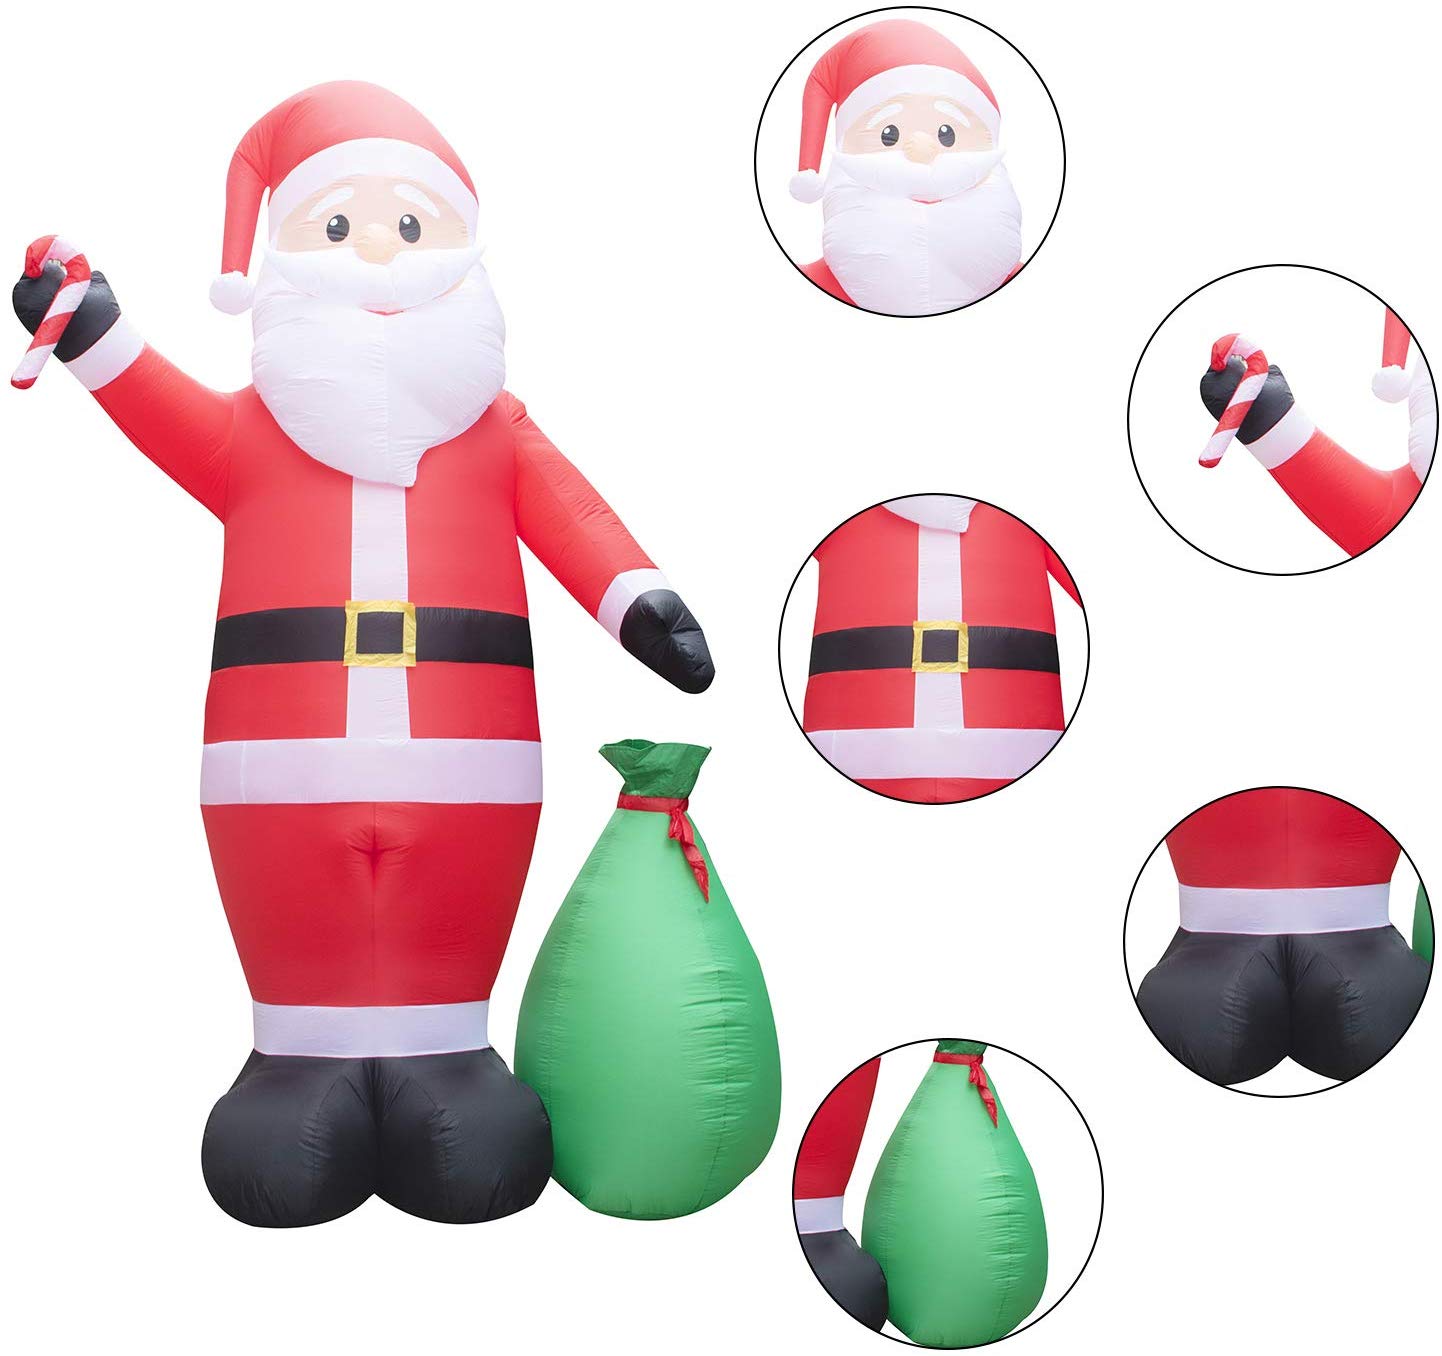 AMENON 12 Feet Christmas Inflatable Santa Claus